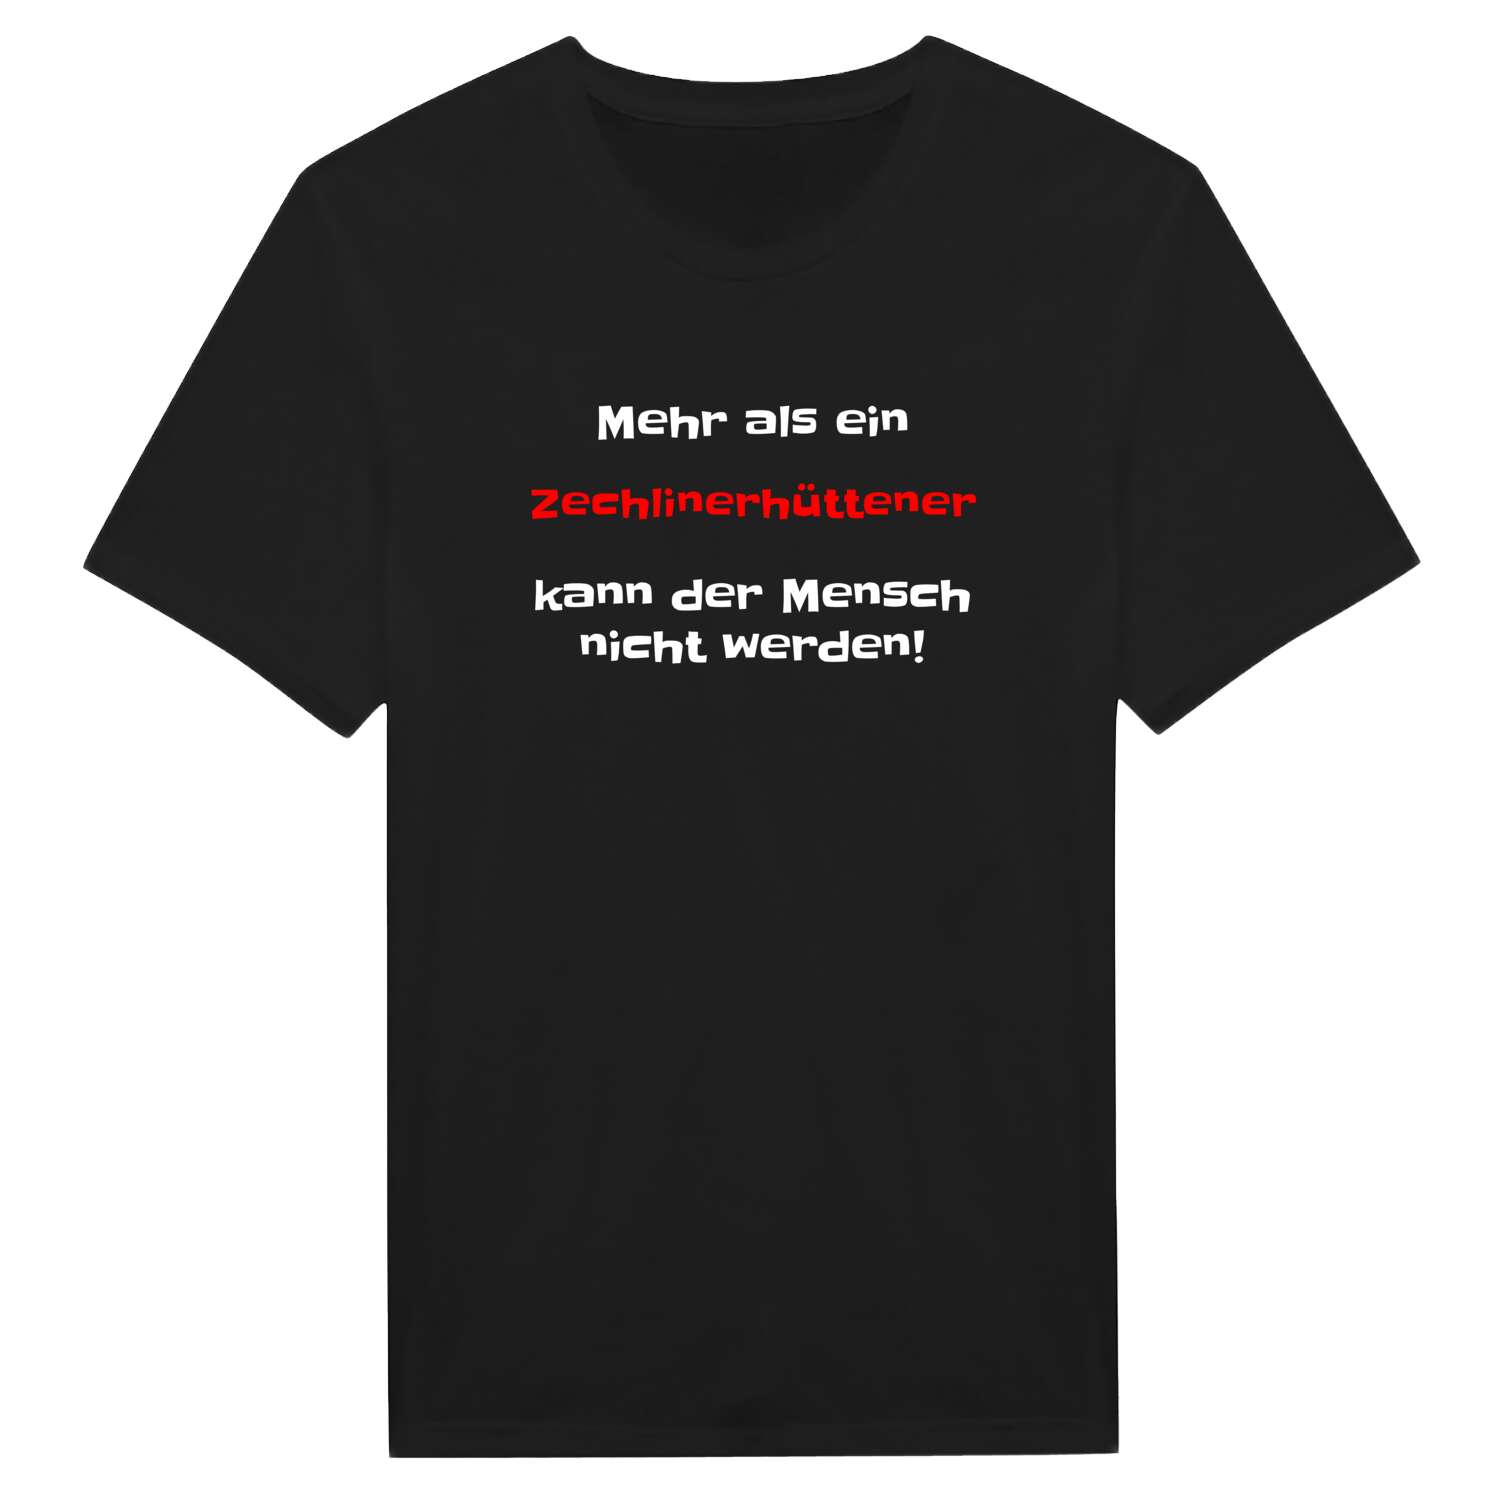 Zechlinerhütte T-Shirt »Mehr als ein«